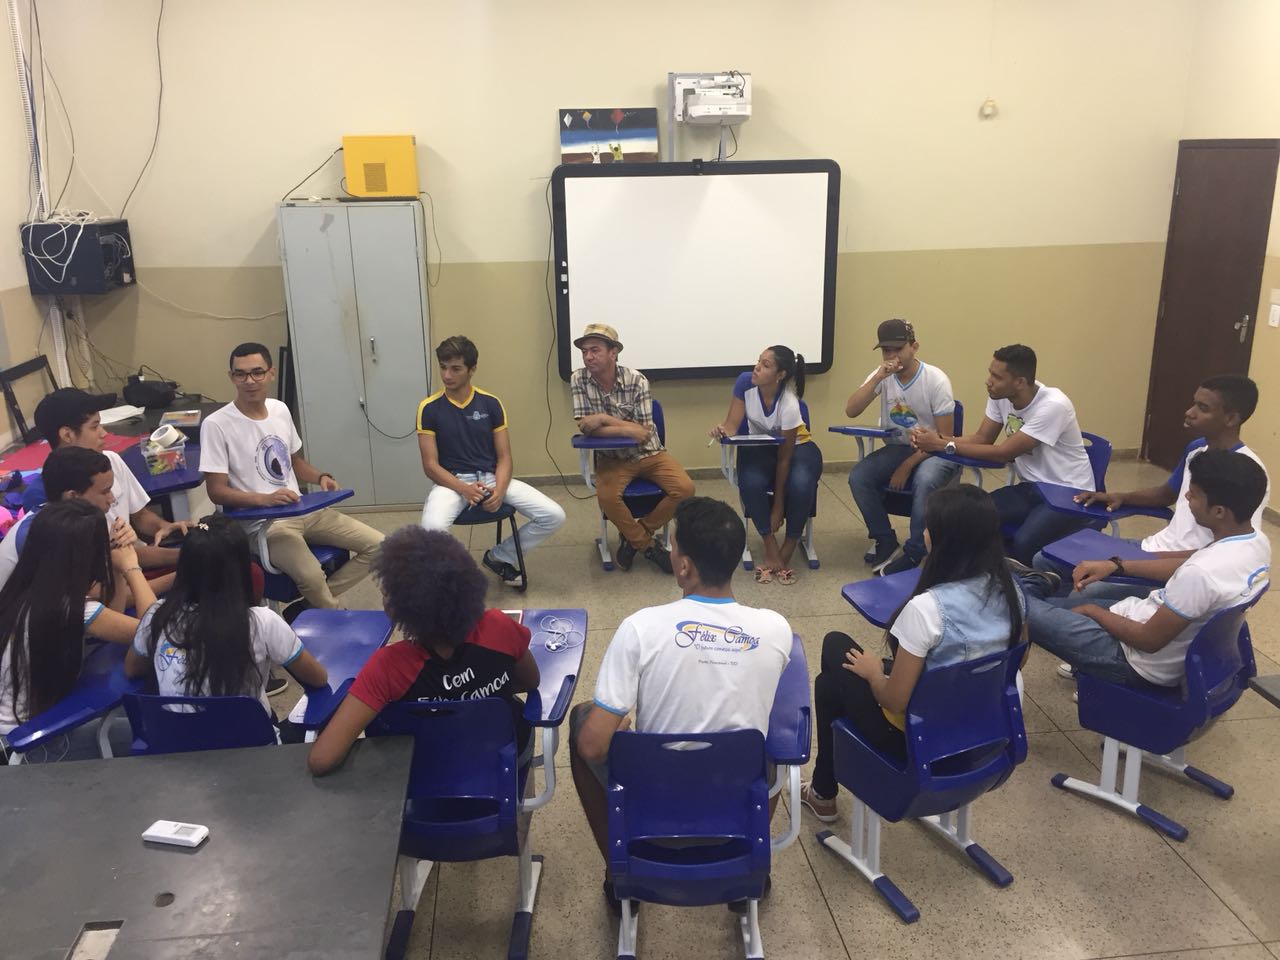 Fundação da Juventude de Porto Nacional e Selo Unicef abordam exercício de cidadania por meio do voto